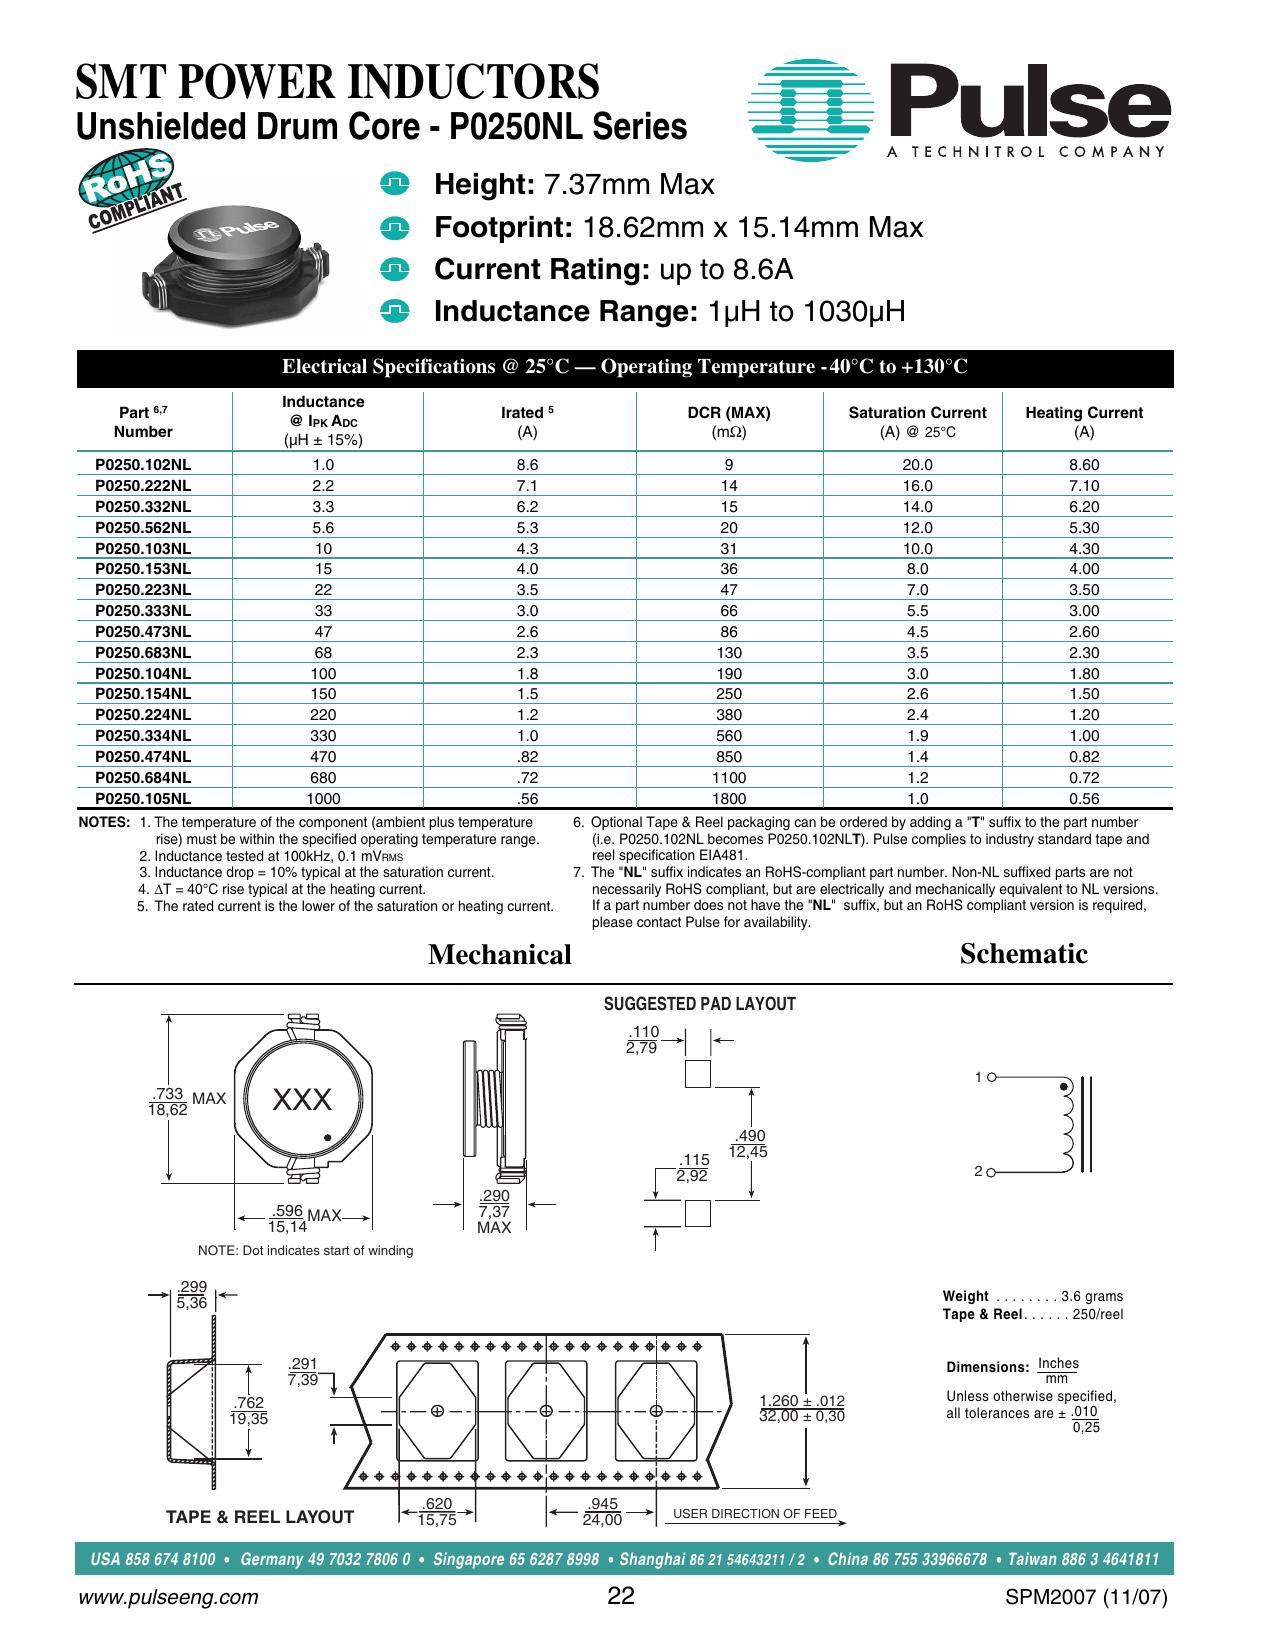 pulse-unshielded-drum-core-po2sonl-series-smt-power-inductors.pdf